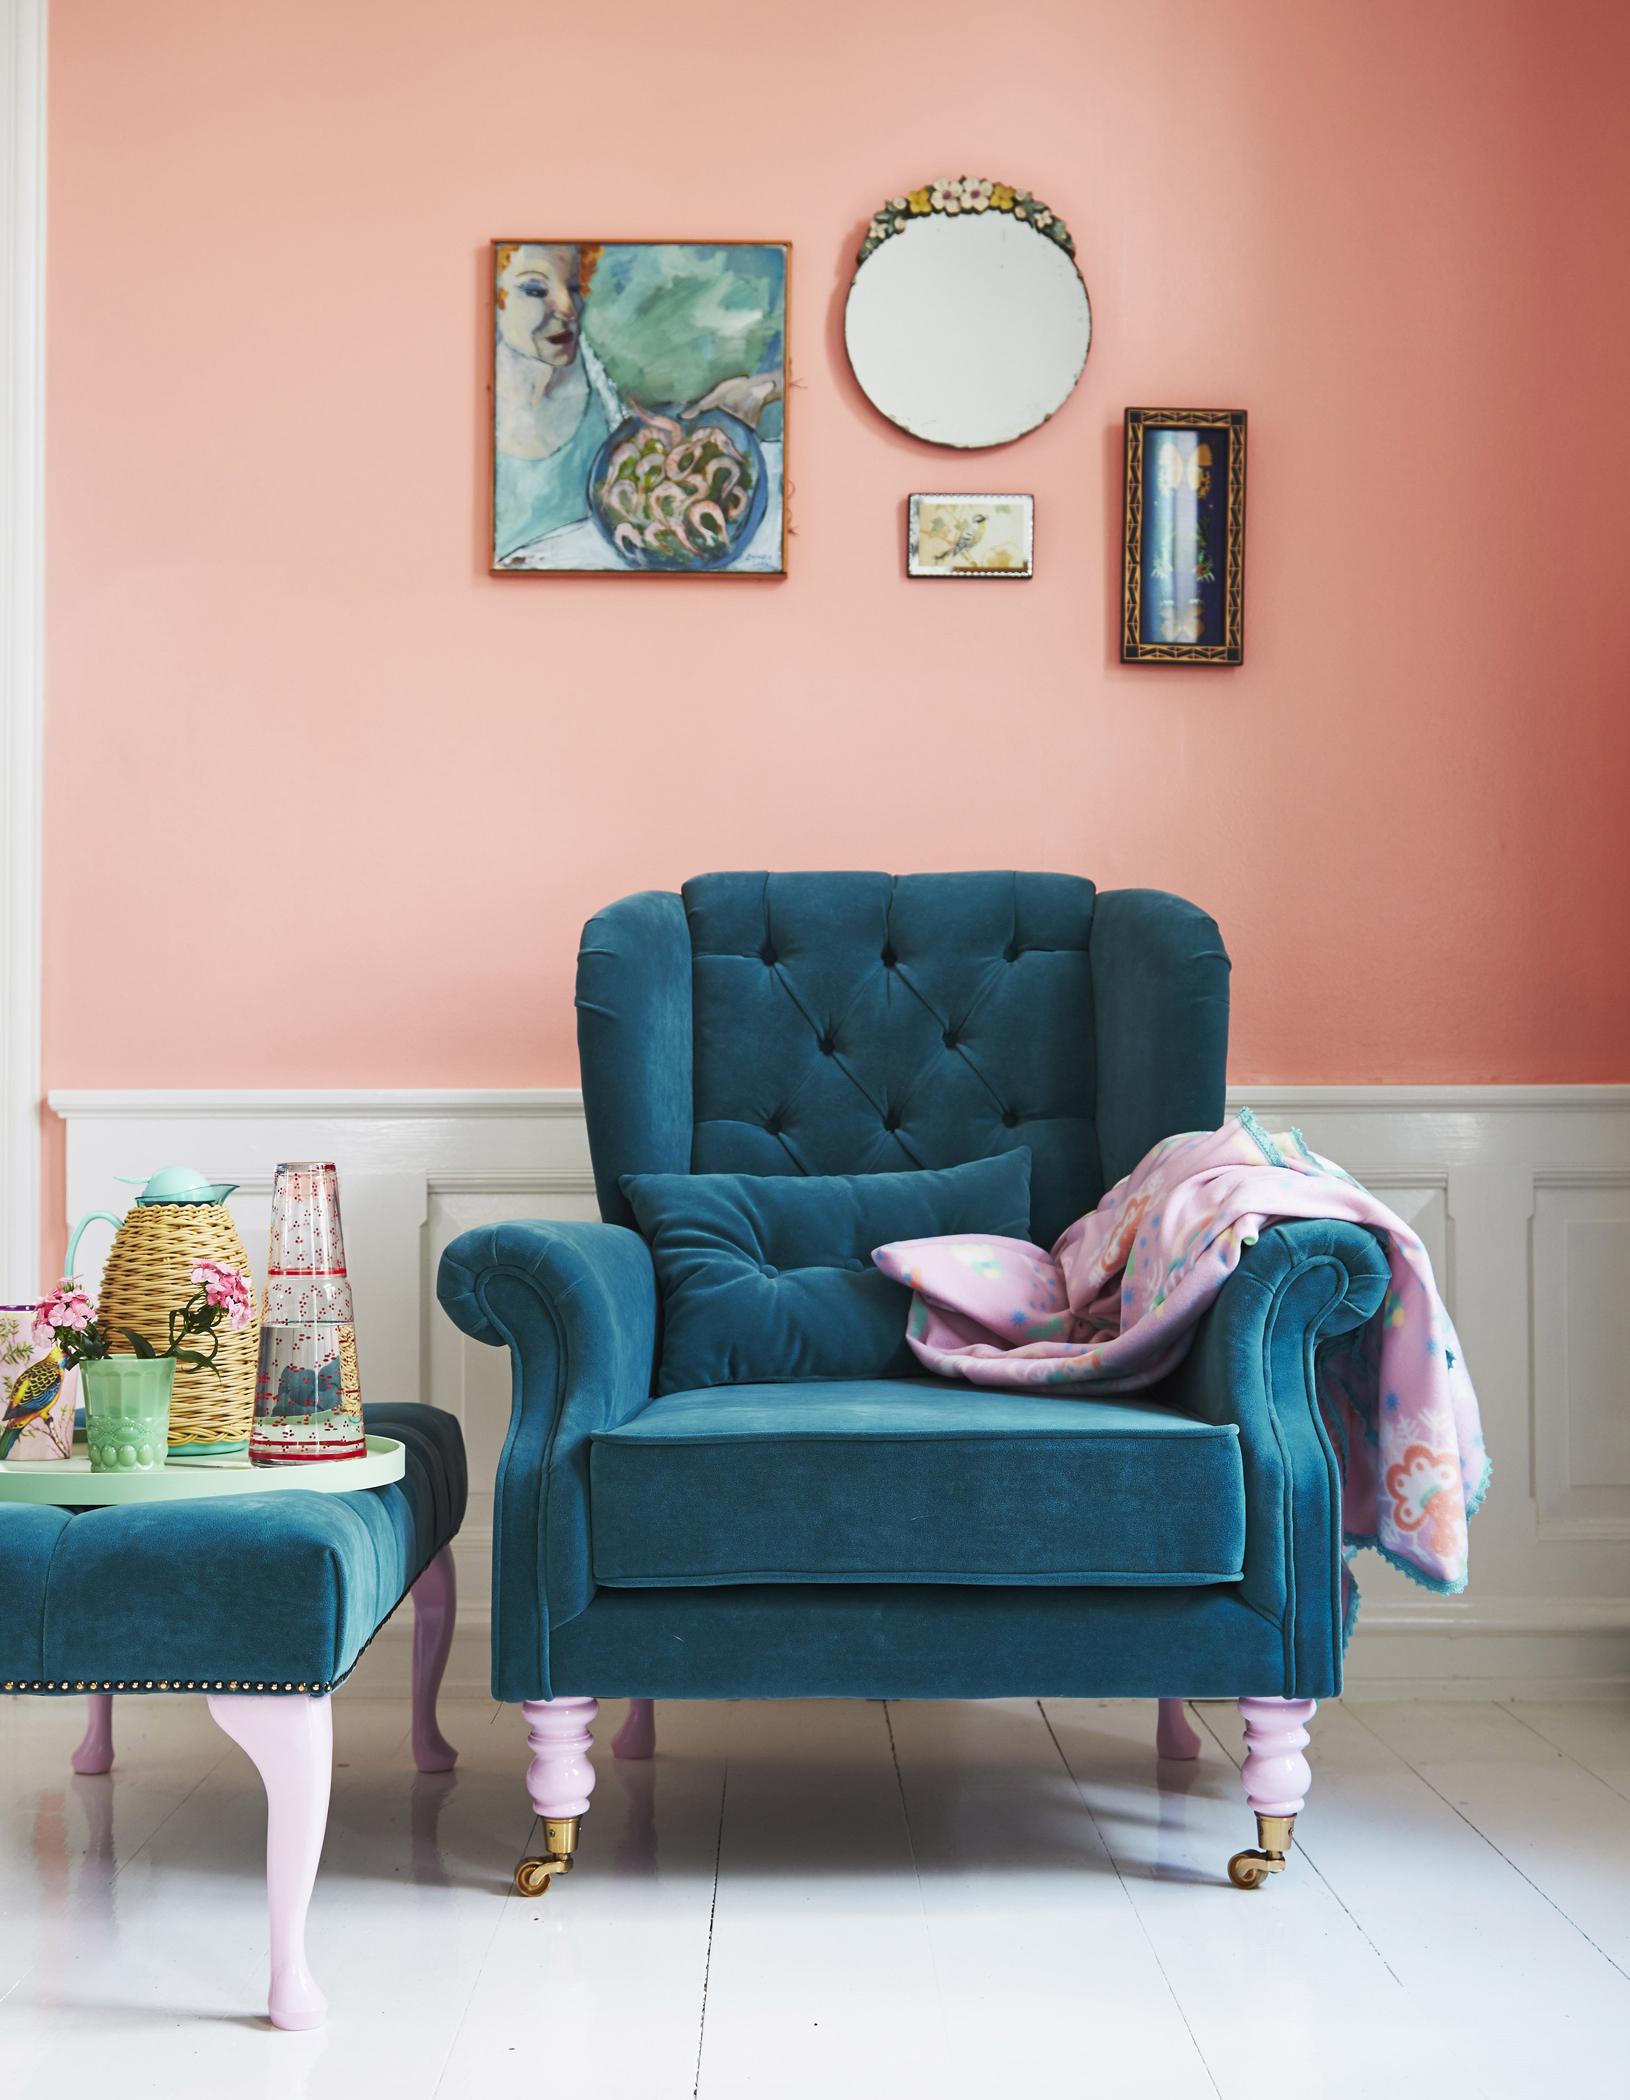 Apricot-Wandfarbe schmeichelt petrolfarbenem Sessel #dielenboden #hocker #wohnzimmer #sessel #bilder #wandbild ©Rice